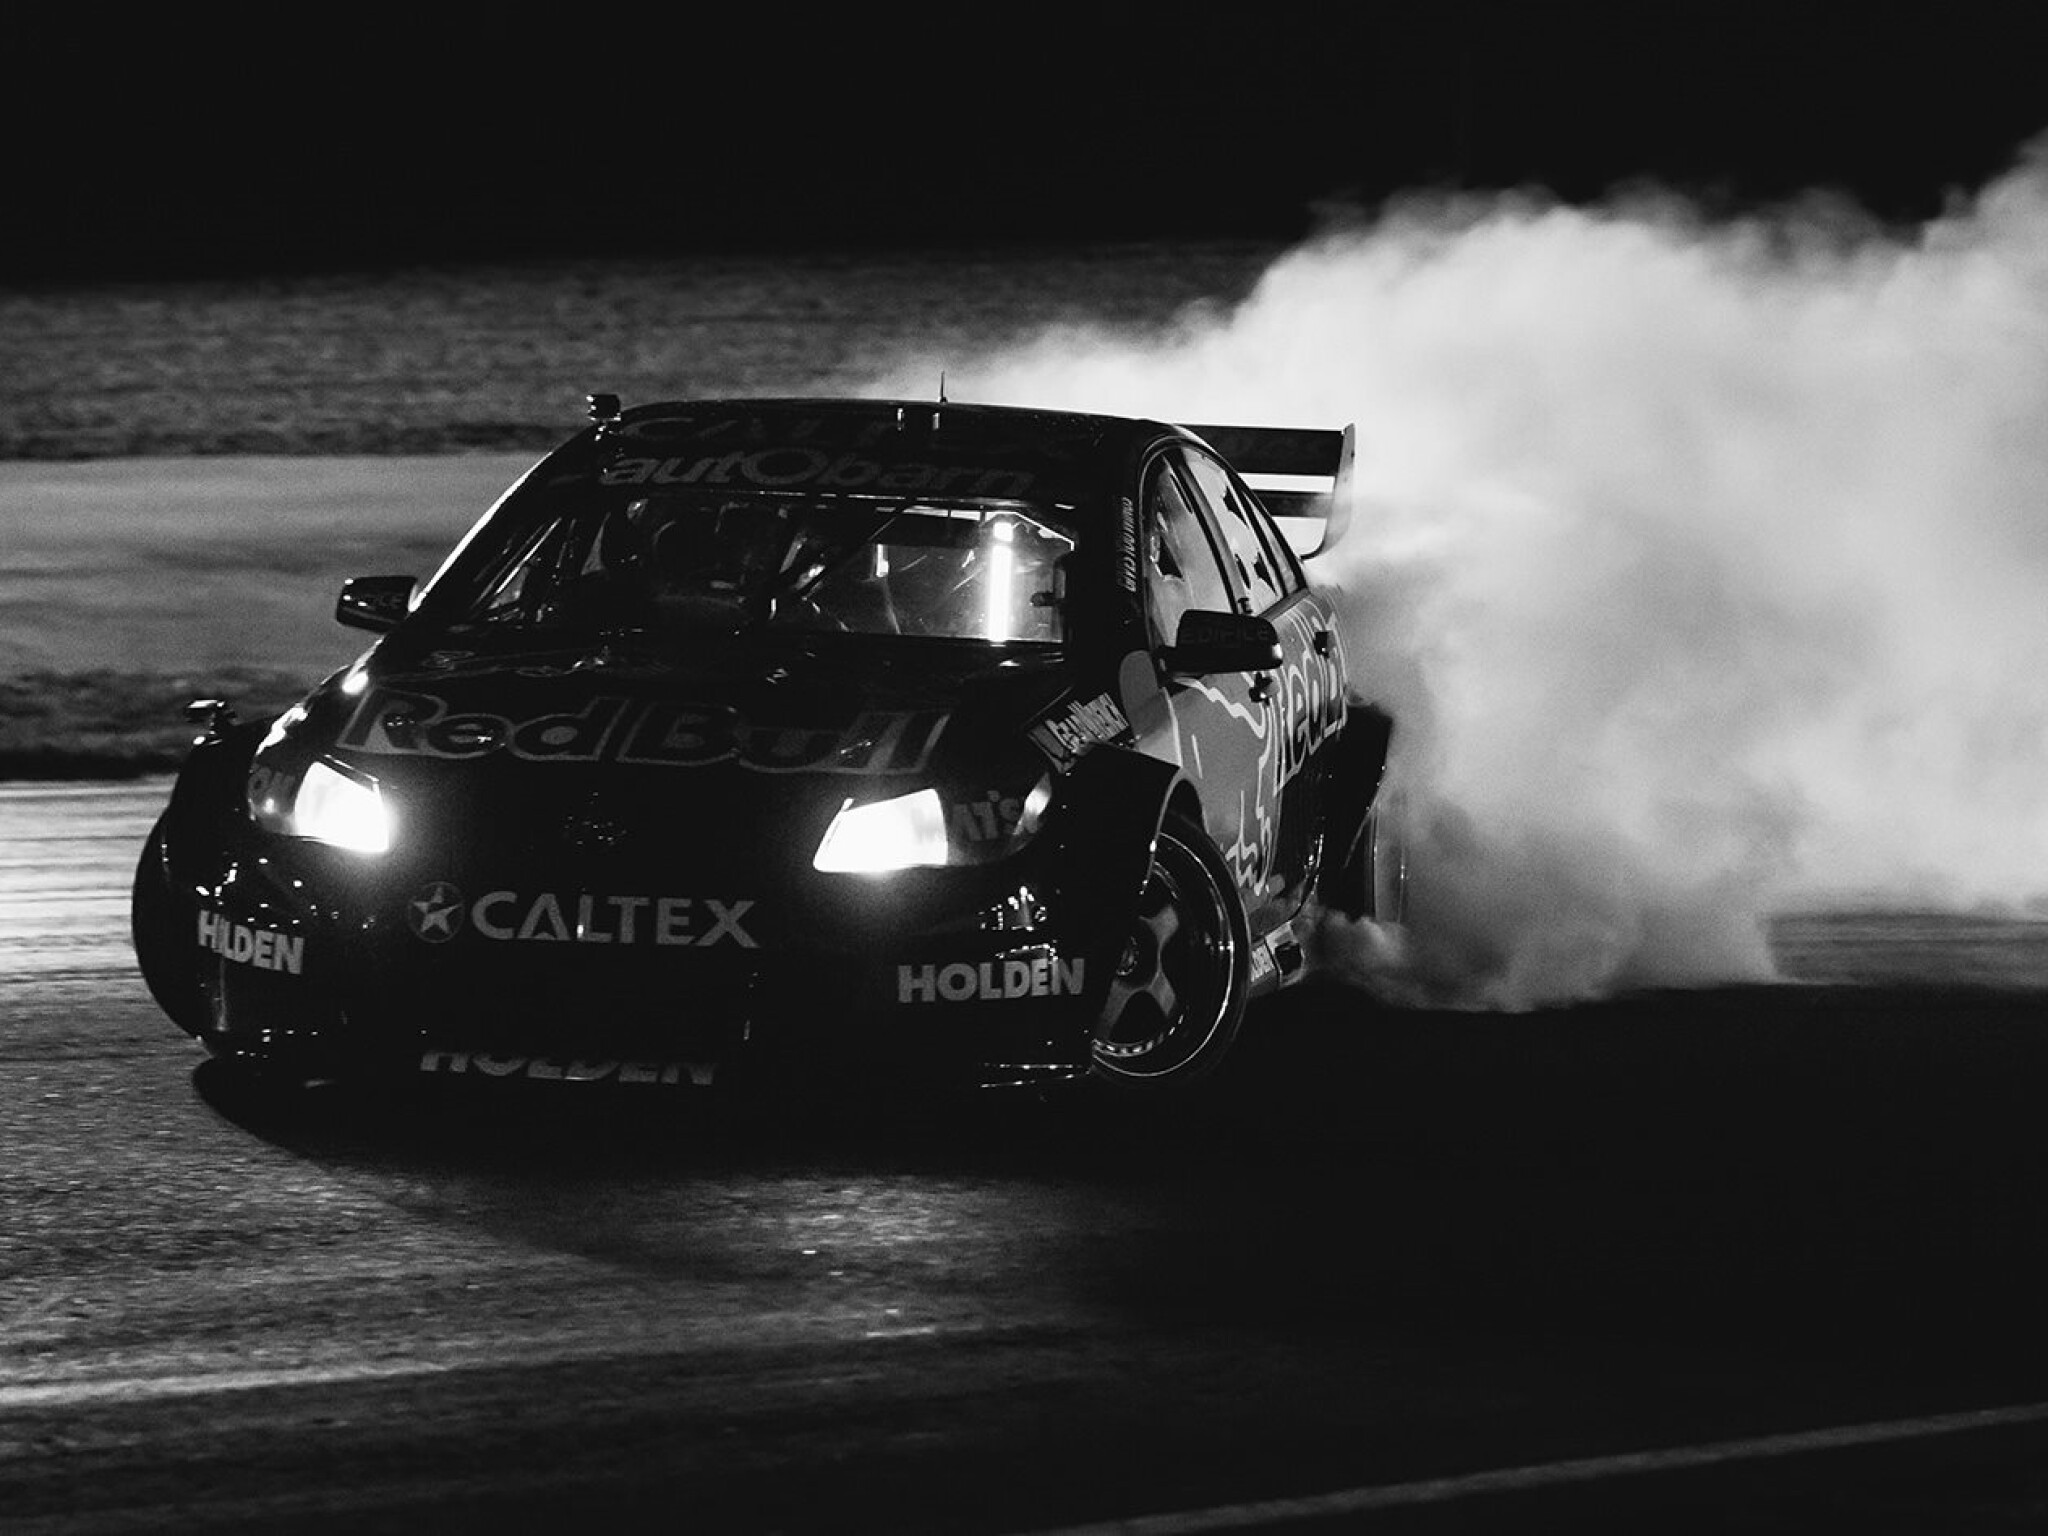 Shane van Gisbergen puts on smokeshow in V8 Supercar turned drift car